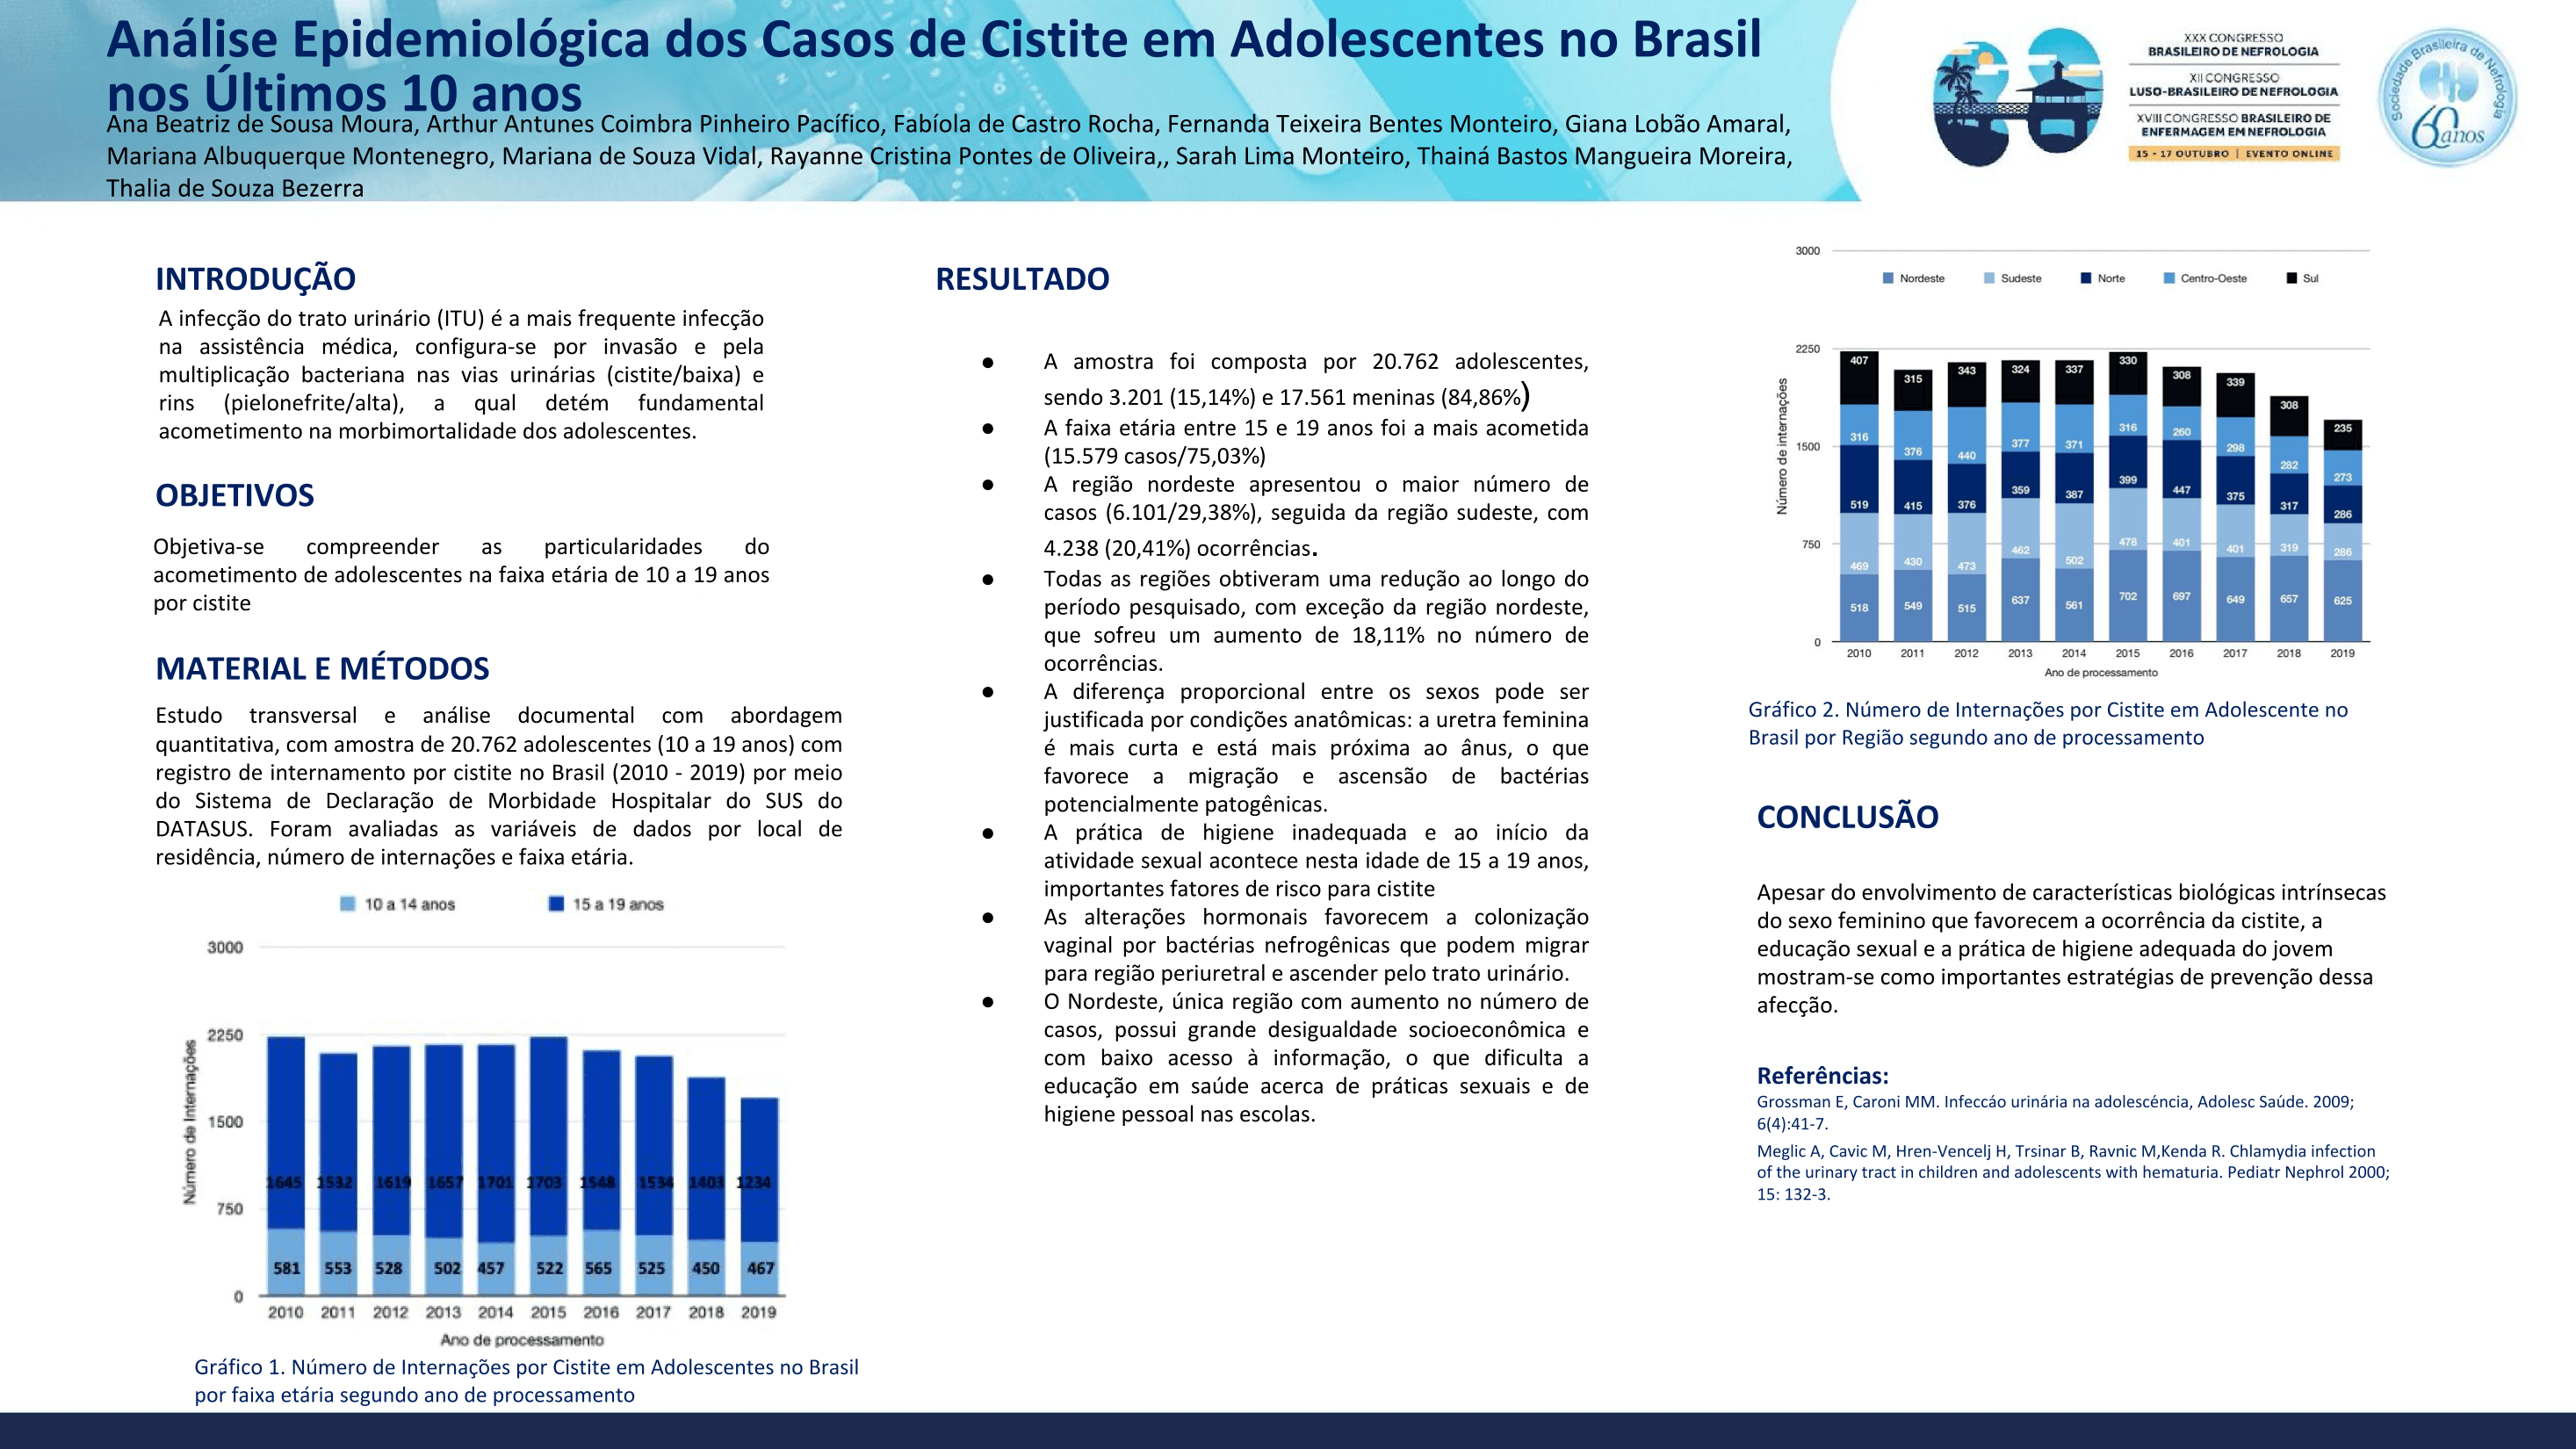 ANÁLISE EPIDEMIOLÓGICA DOS CASOS DE CISTITE EM ADOLESCENTES NO BRASIL NOS ÚLTIMOS 10 ANOS